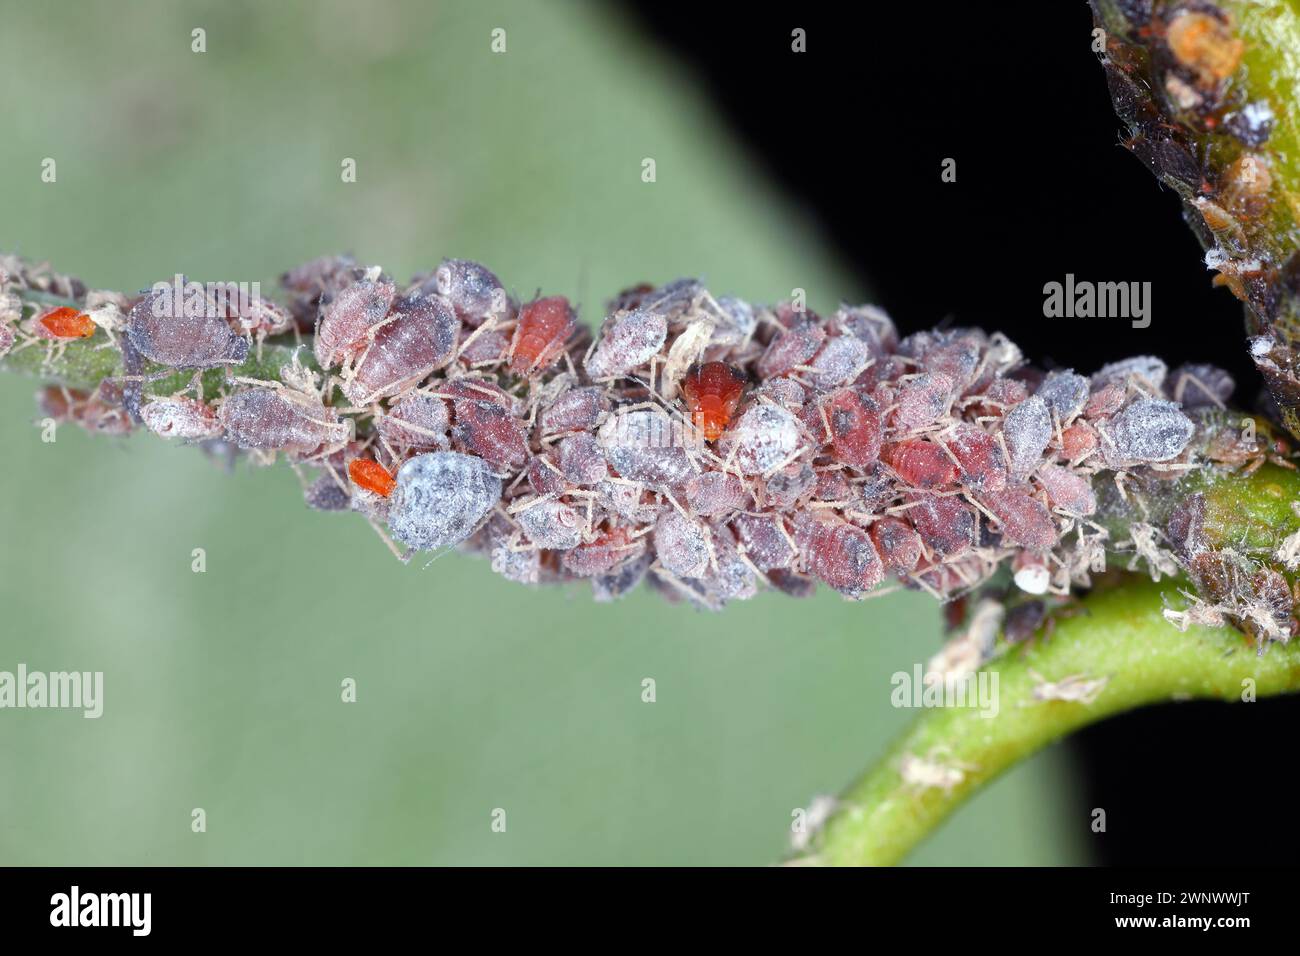 Birnengras-Blattlaus (Melanaphis pyraria) und Birnenpsychologie, Europäischer Birnensauger (Cacopsylla pyri). Eine Kolonie flügelloser Insekten auf Birnenblatt und Triebe. Stockfoto